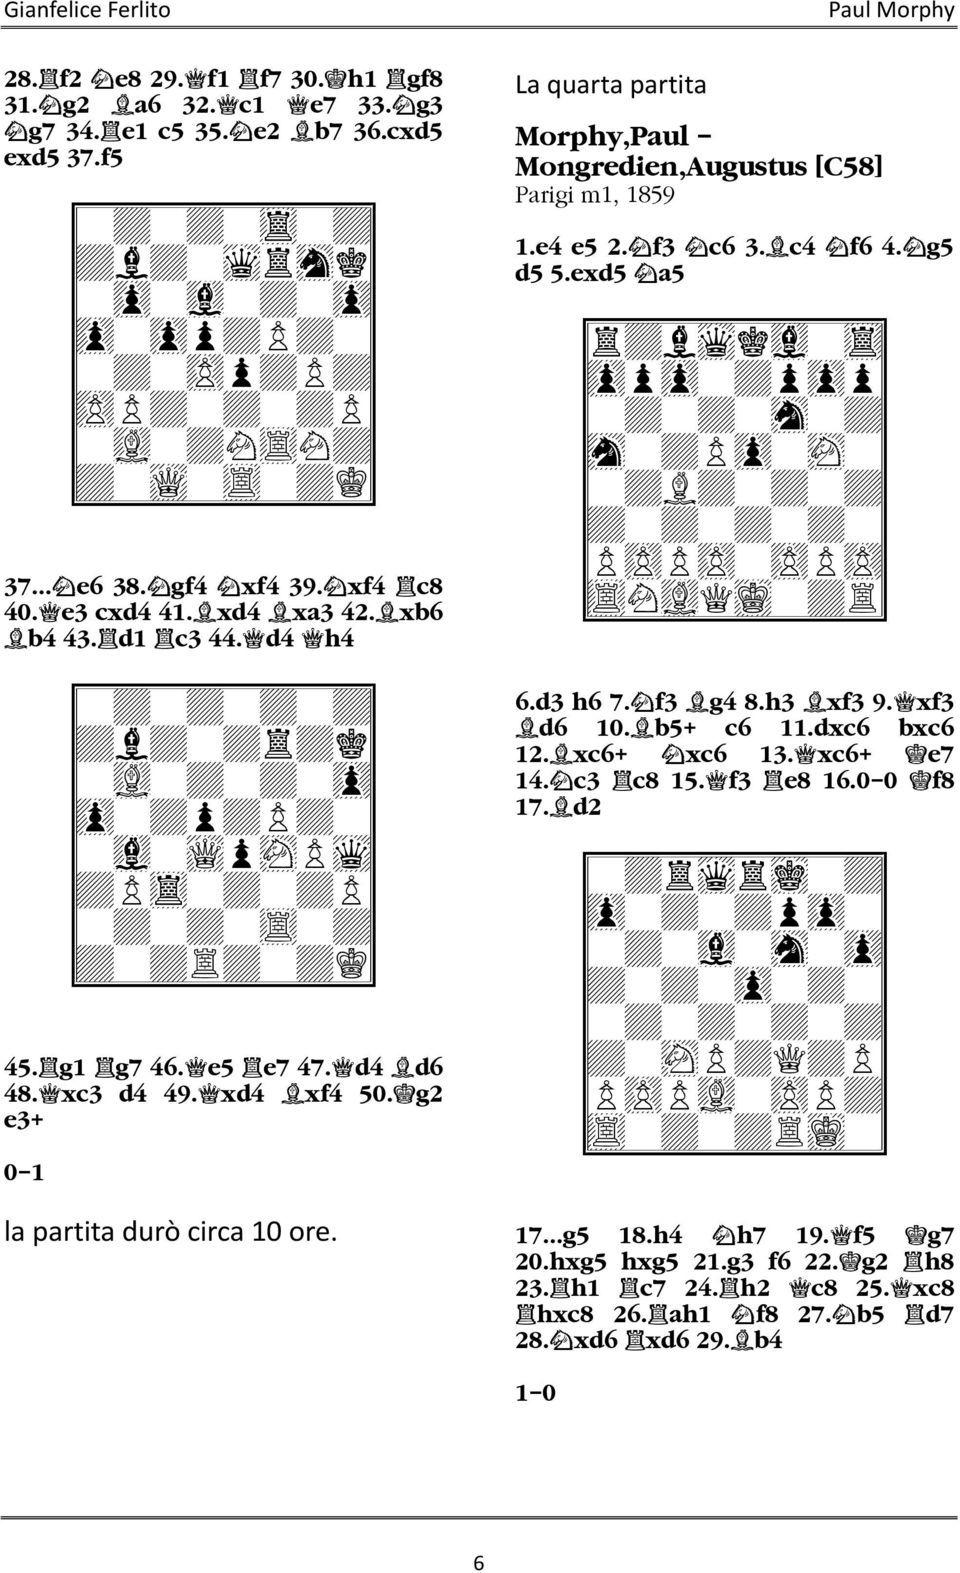 d4 h4 9-+-+-+-+0 9+l+-+r+k0 9-vL-+-+-zp0 9zp-+p+P+-0 9-vl-wQpsNPwq0 9+Ptr-+-+P0 9-+-+-tR-+0 9+-+R+-+K0 45. g1 g7 46. e5 e7 47. d4 d6 48. xc3 d4 49. xd4 xf4 50. g2 e3+ 0 1 la partita durò circa 10 ore.